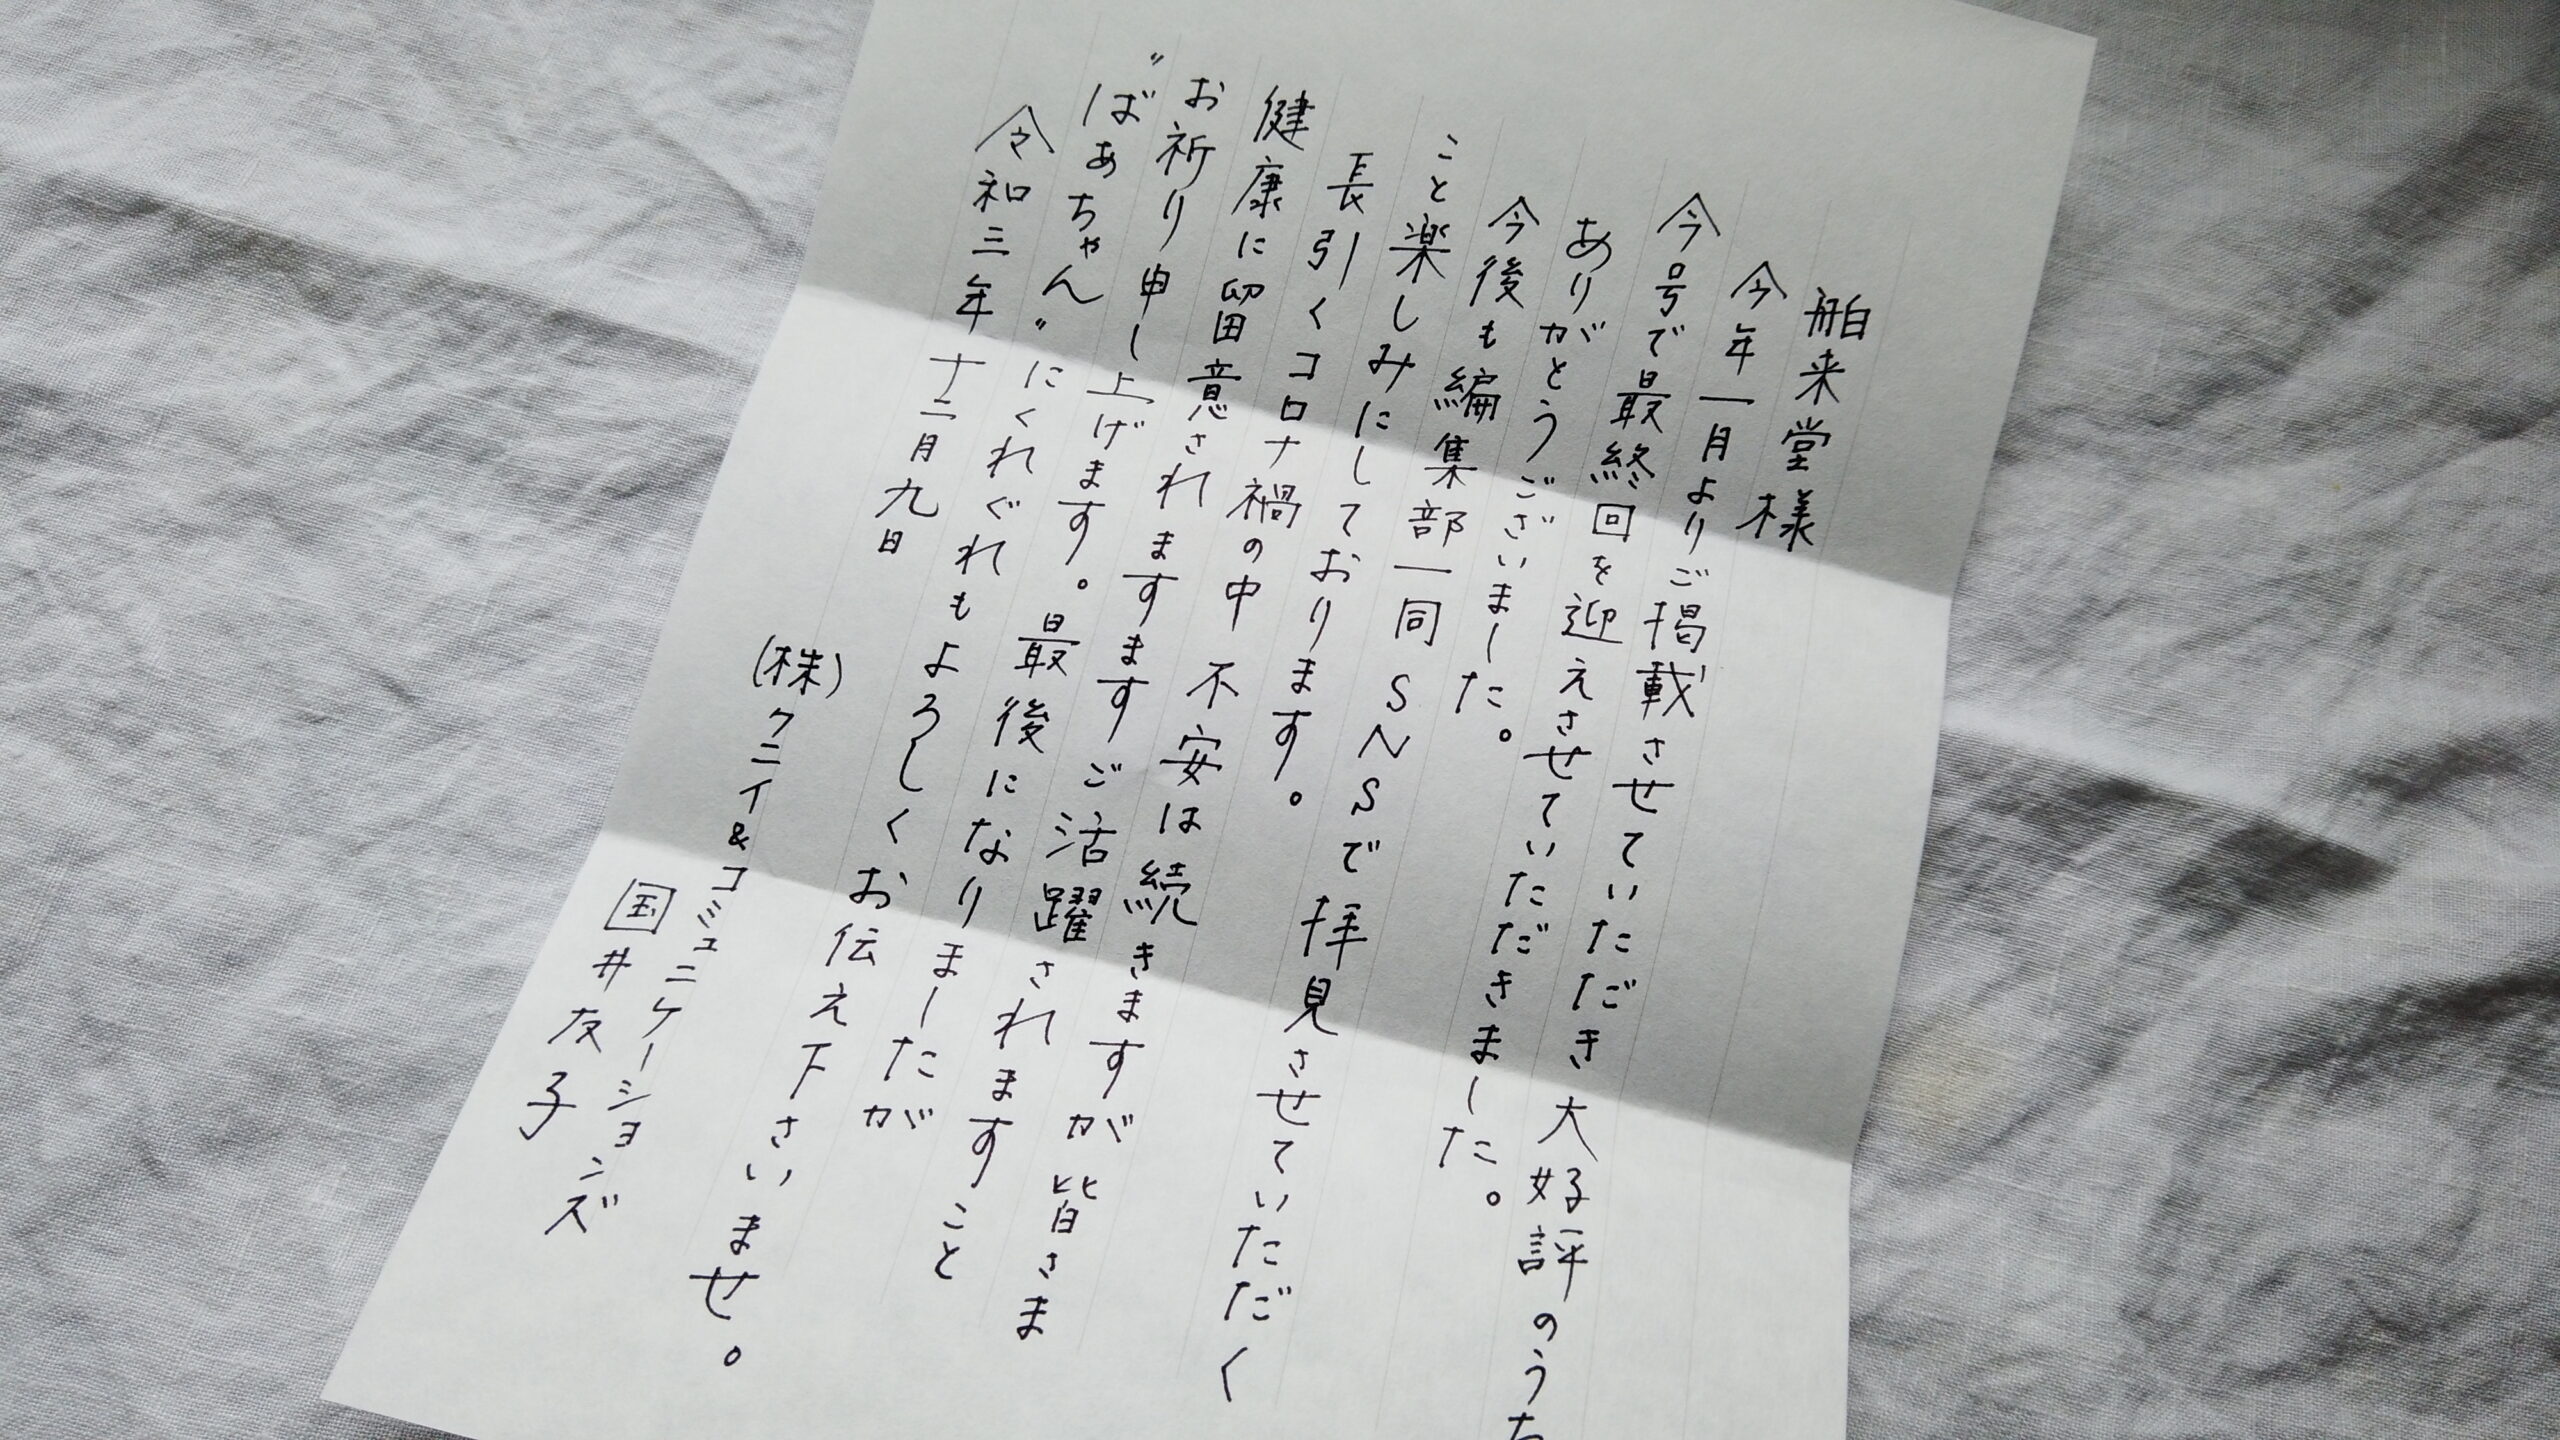 自筆のお手紙頂きました。ありがとうございました。